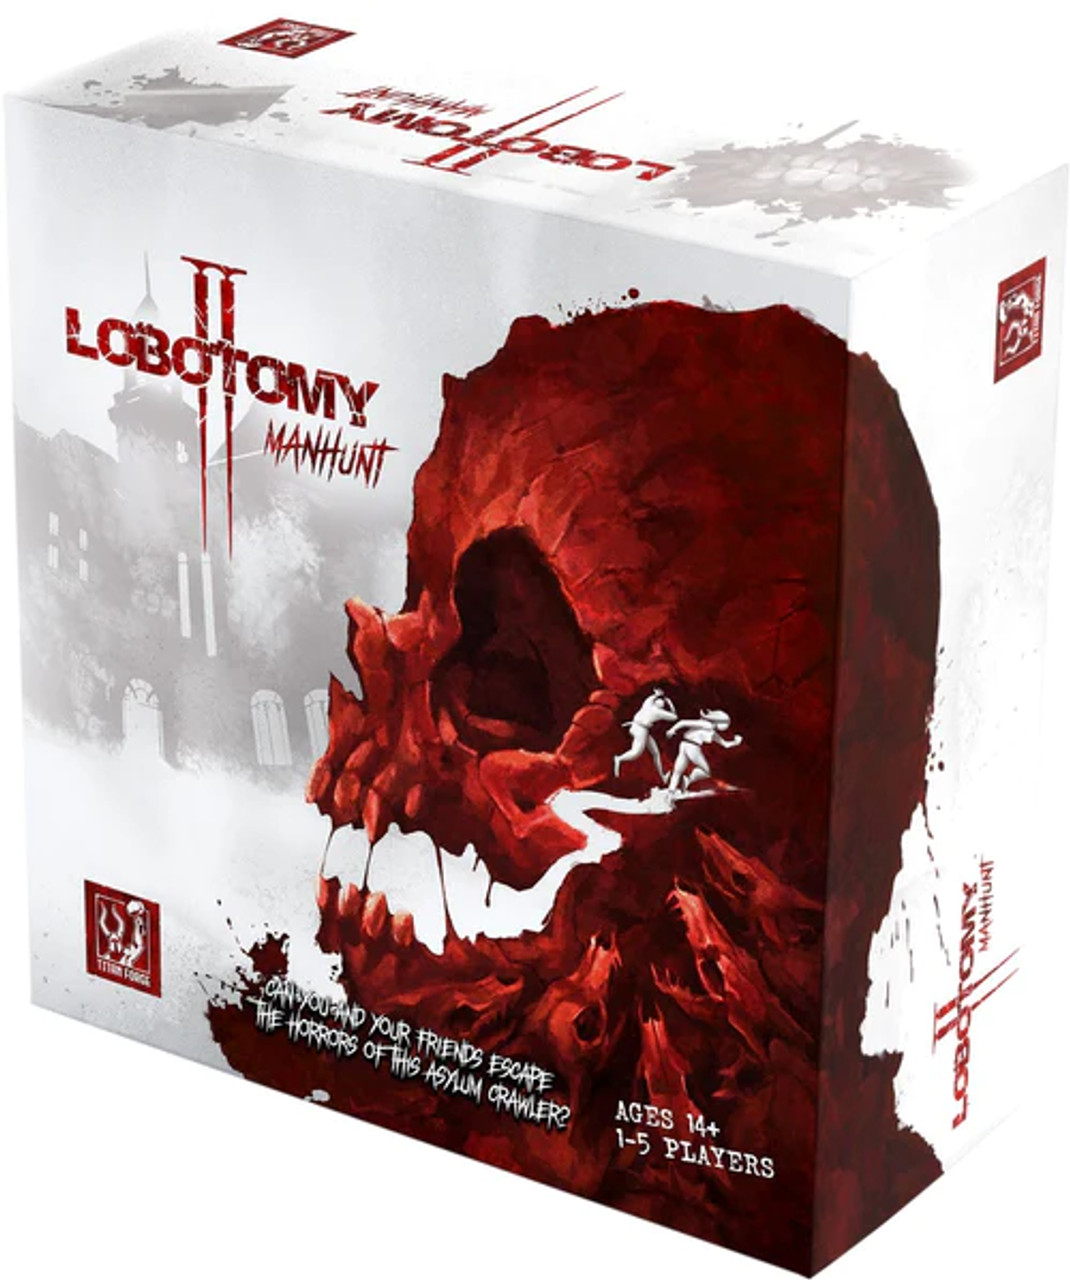 Lobotomy 2: Manhunt + Criminally Insane Word Expansion társasjáték  rendelés, bolt, webáruház